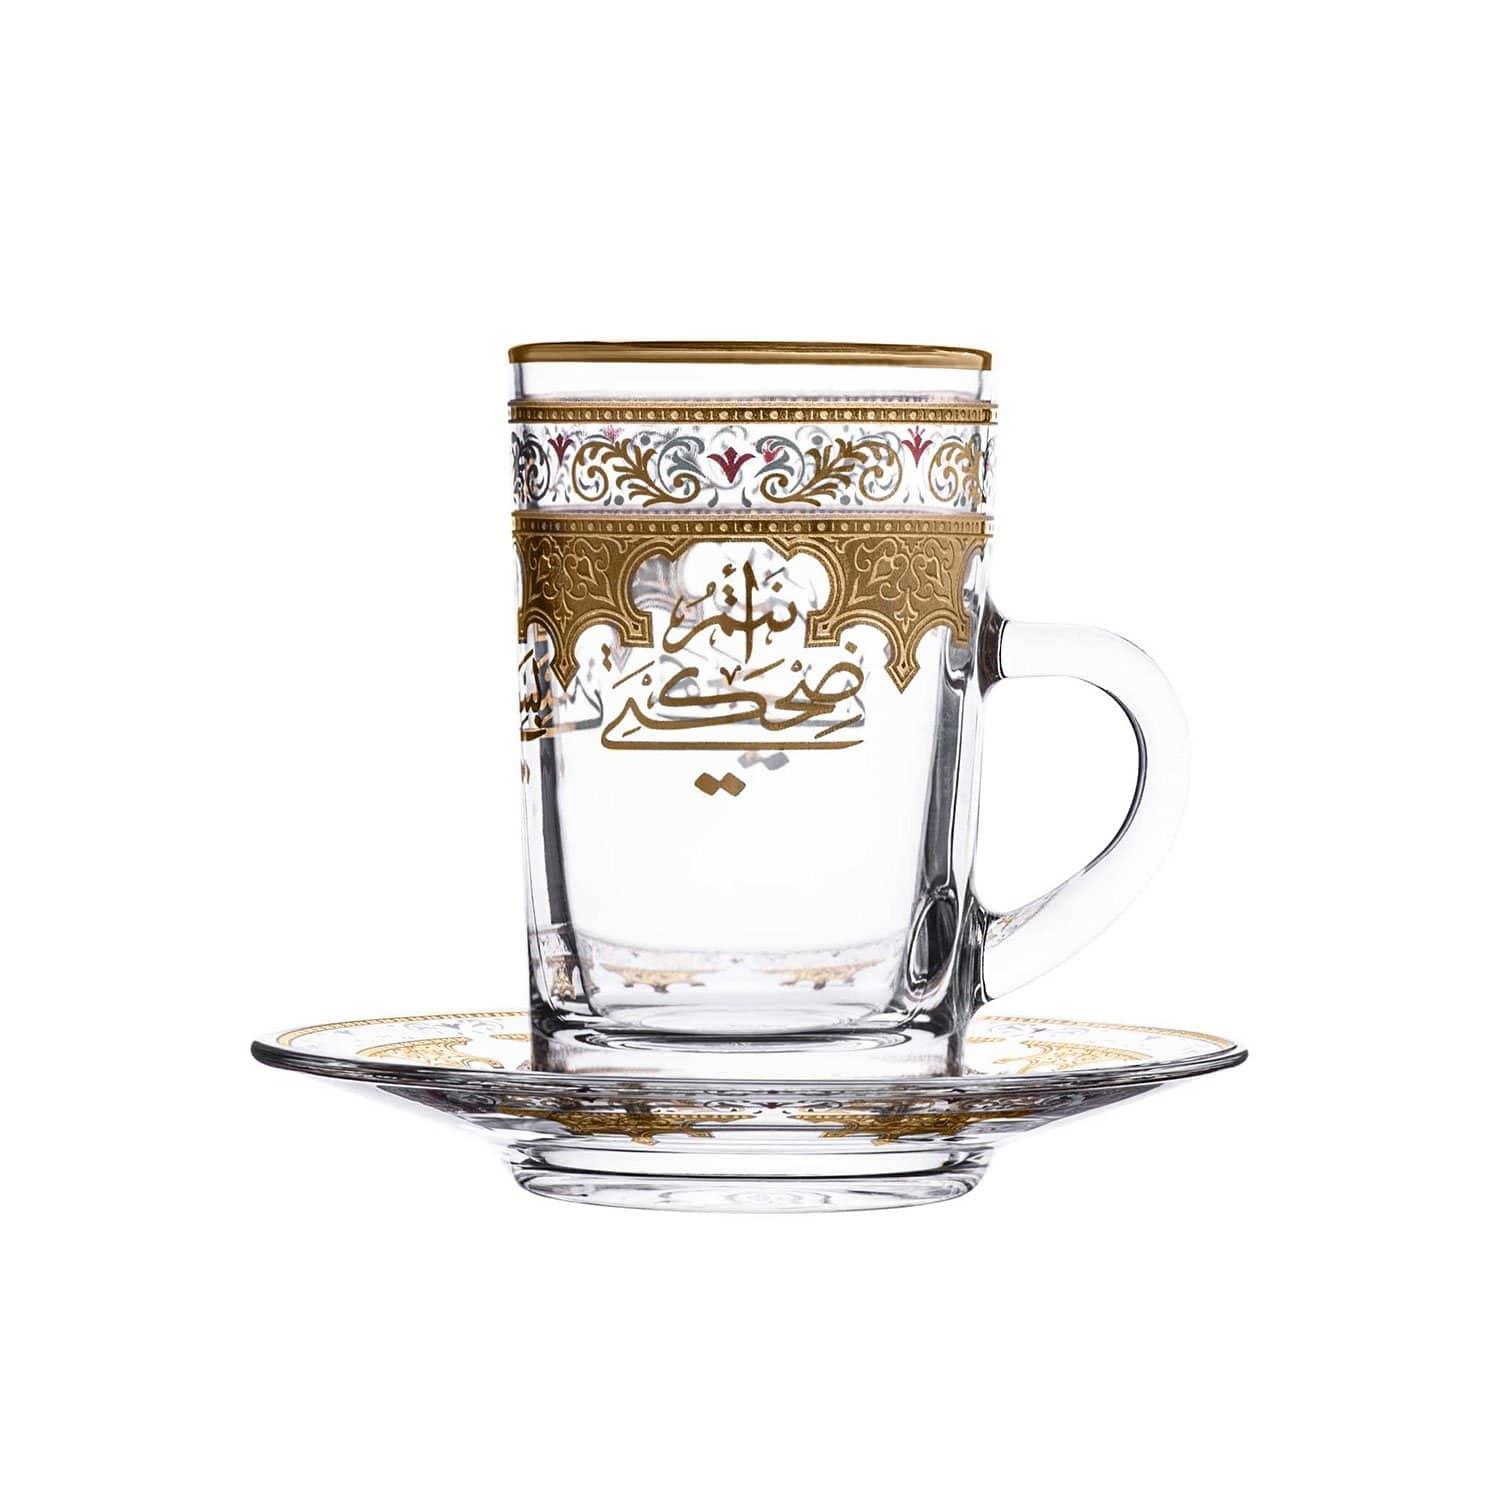 طقم كاسات شاي زجاج 12 قطعة مع صحون شفاف وذهبي مزخرف دملاج  DIMLAJ SUROOR 12PC TEA CUP AND SAUCER